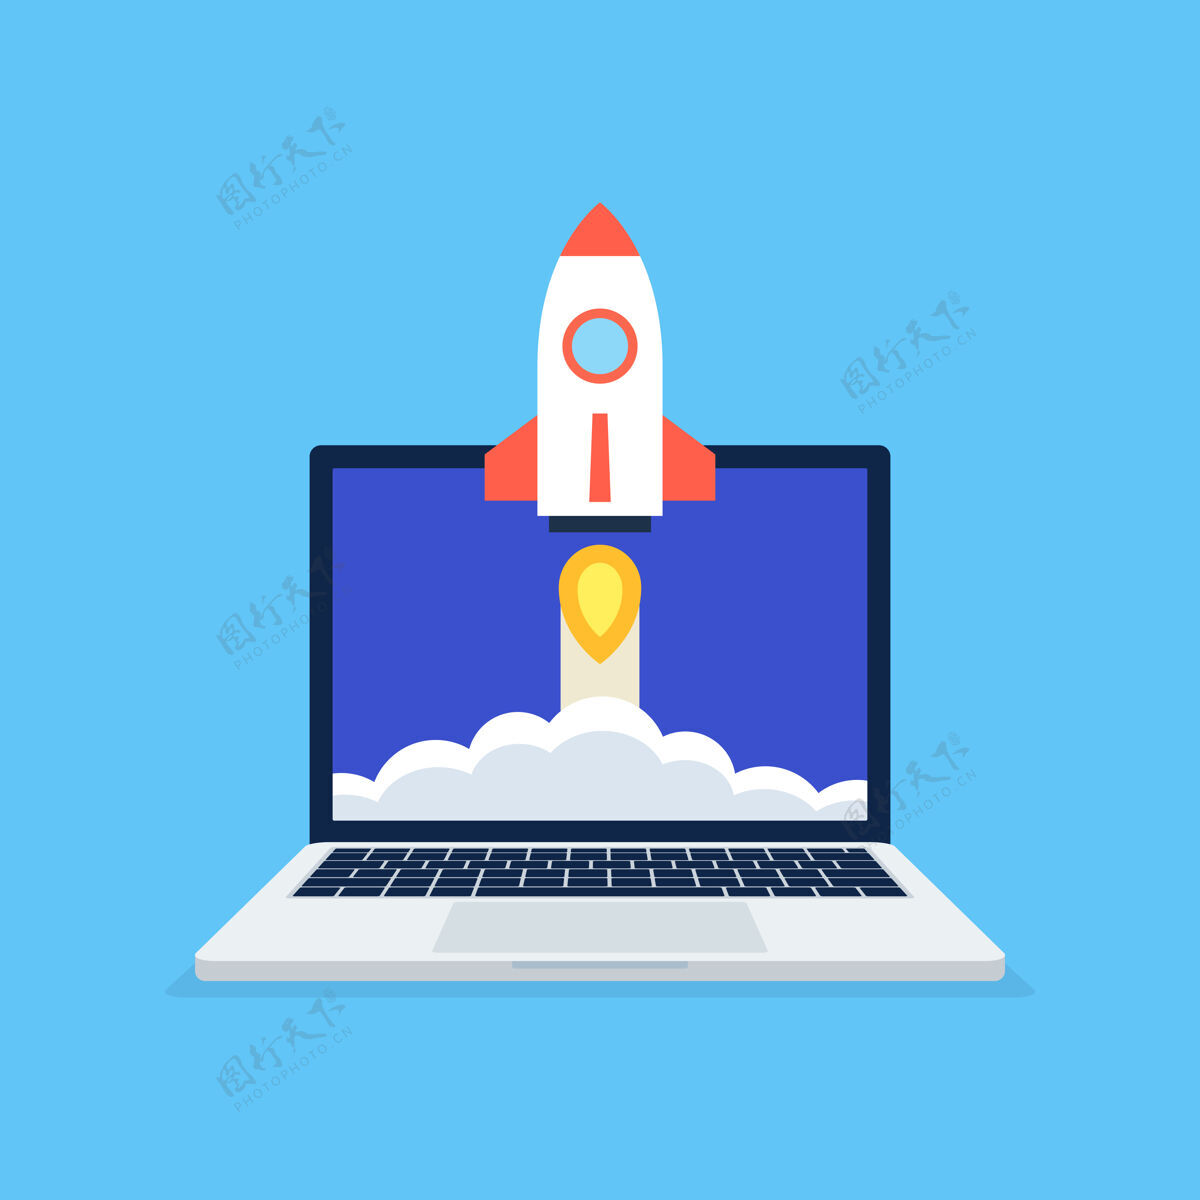 速度启动商业项目概念与红色火箭发射从笔记本电脑屏幕上的蓝色背景发现飞船发现